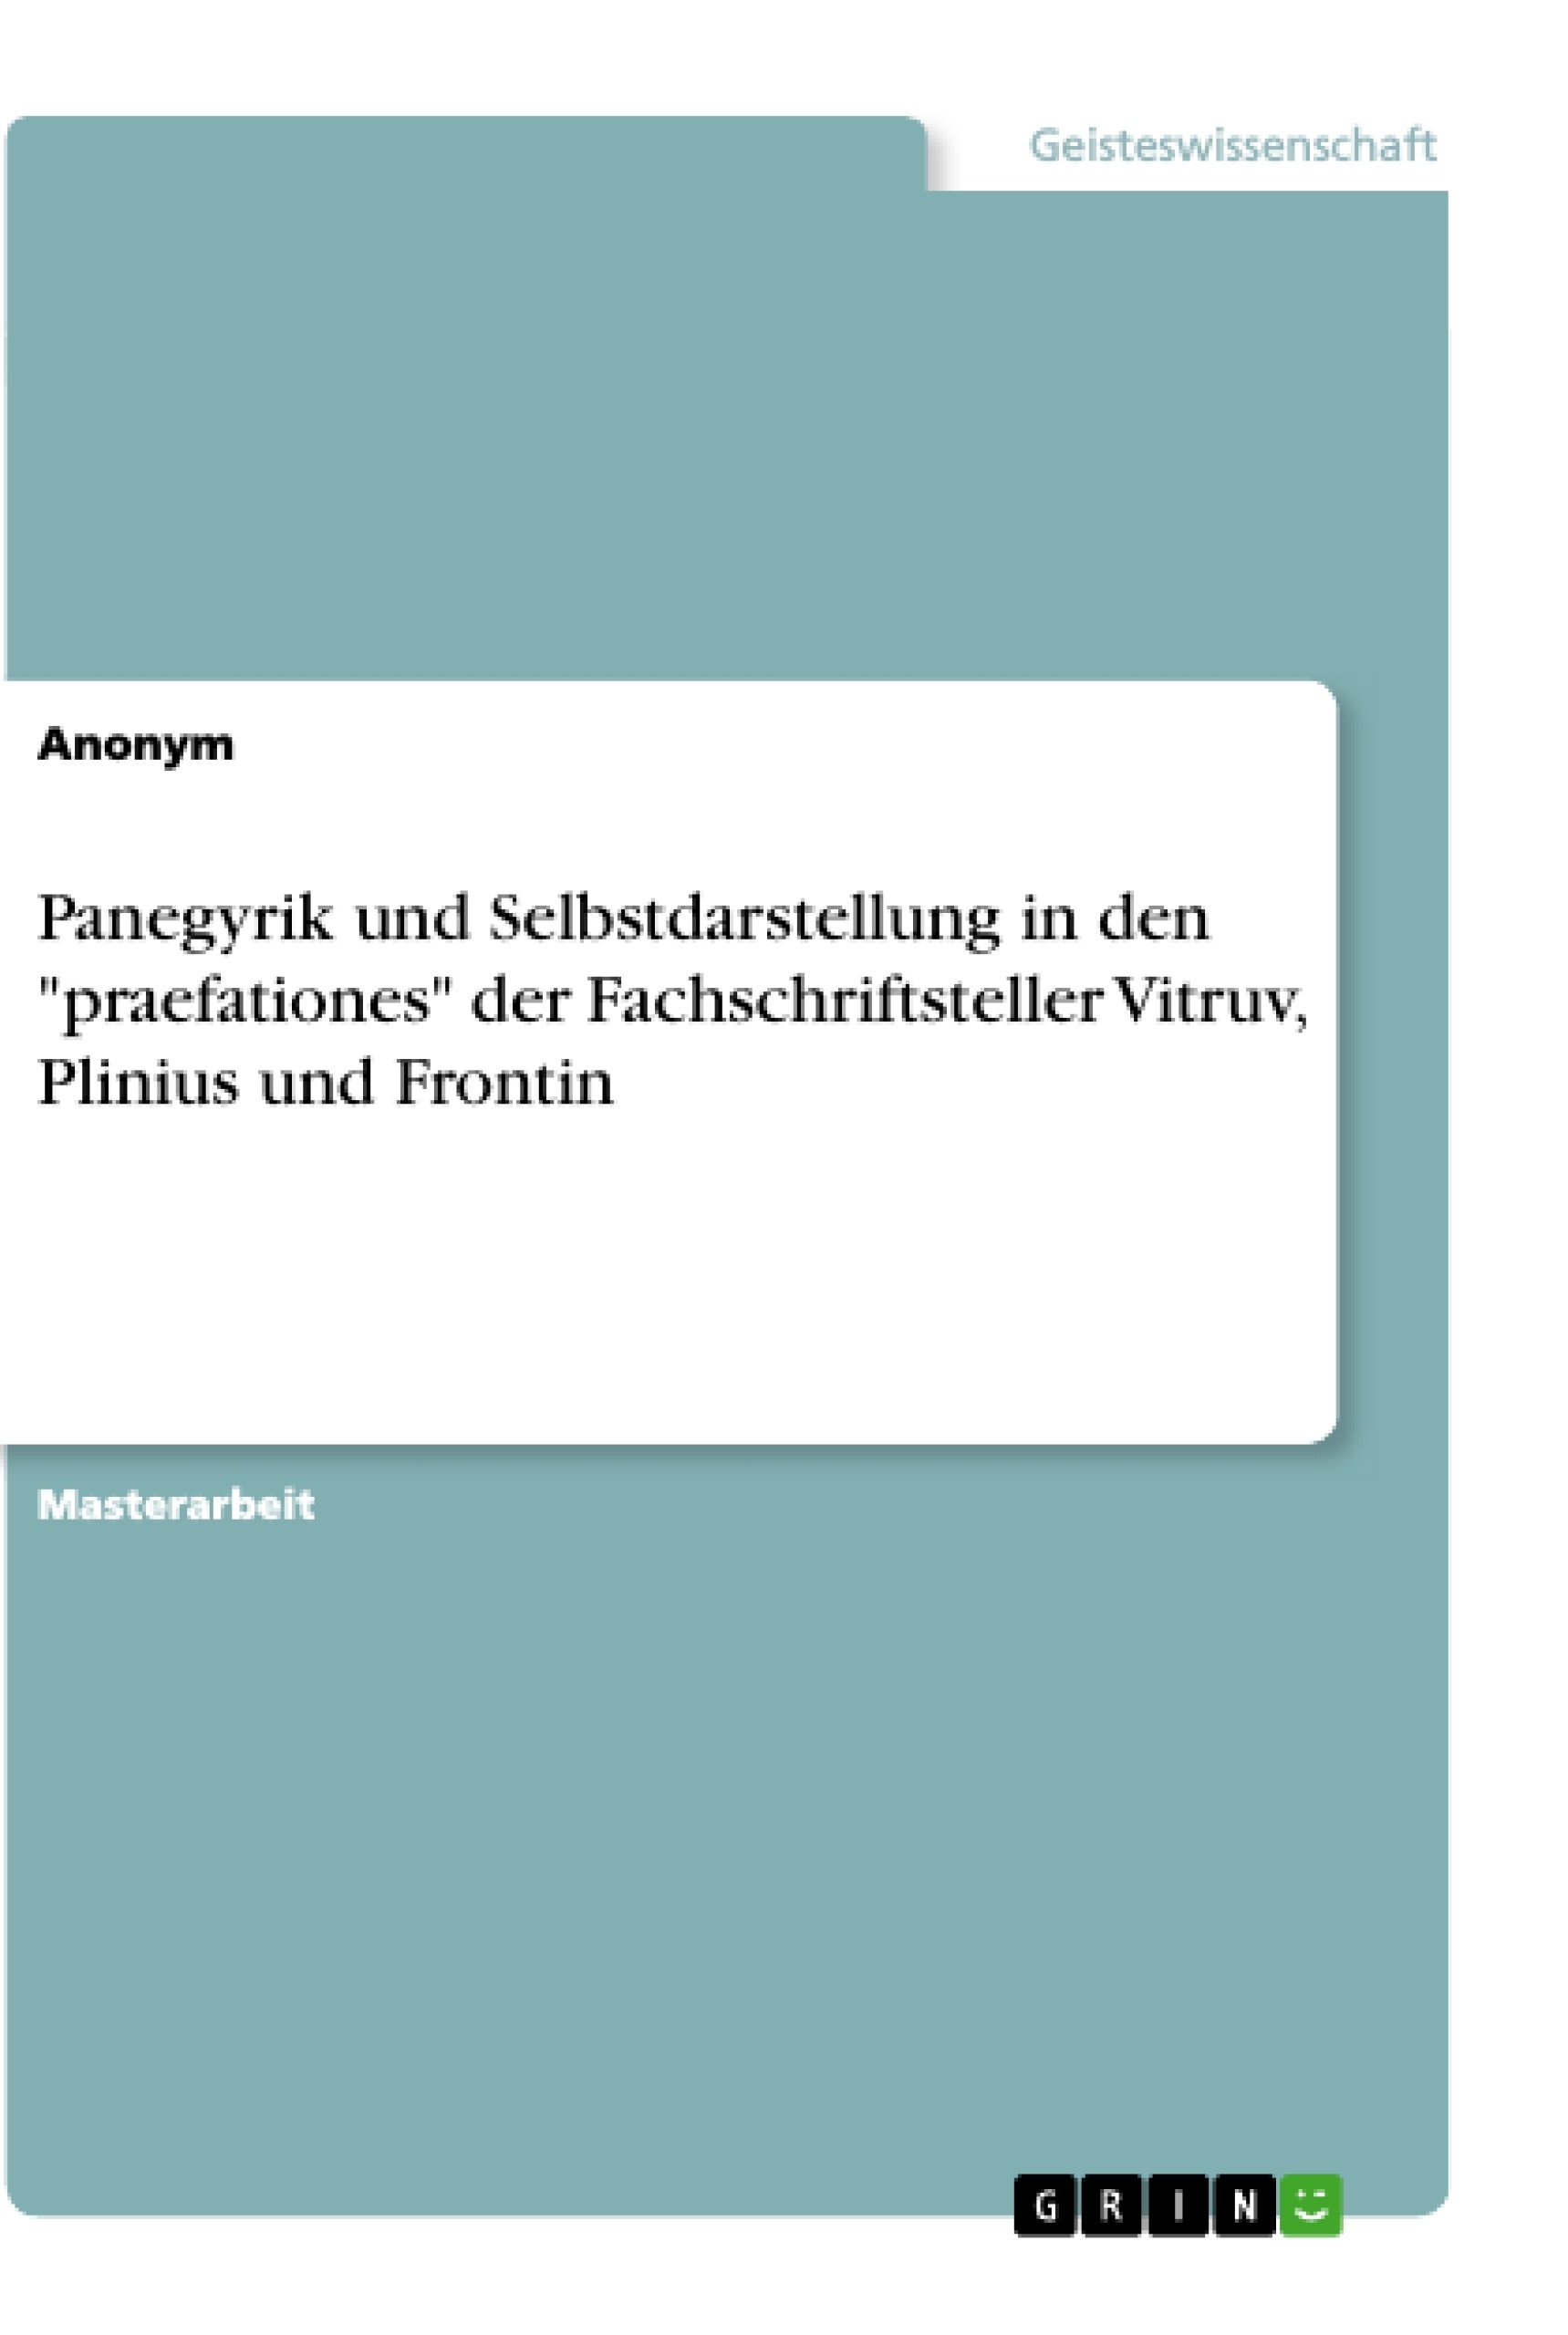 Título: Panegyrik und Selbstdarstellung in den "praefationes" der Fachschriftsteller Vitruv, Plinius und Frontin